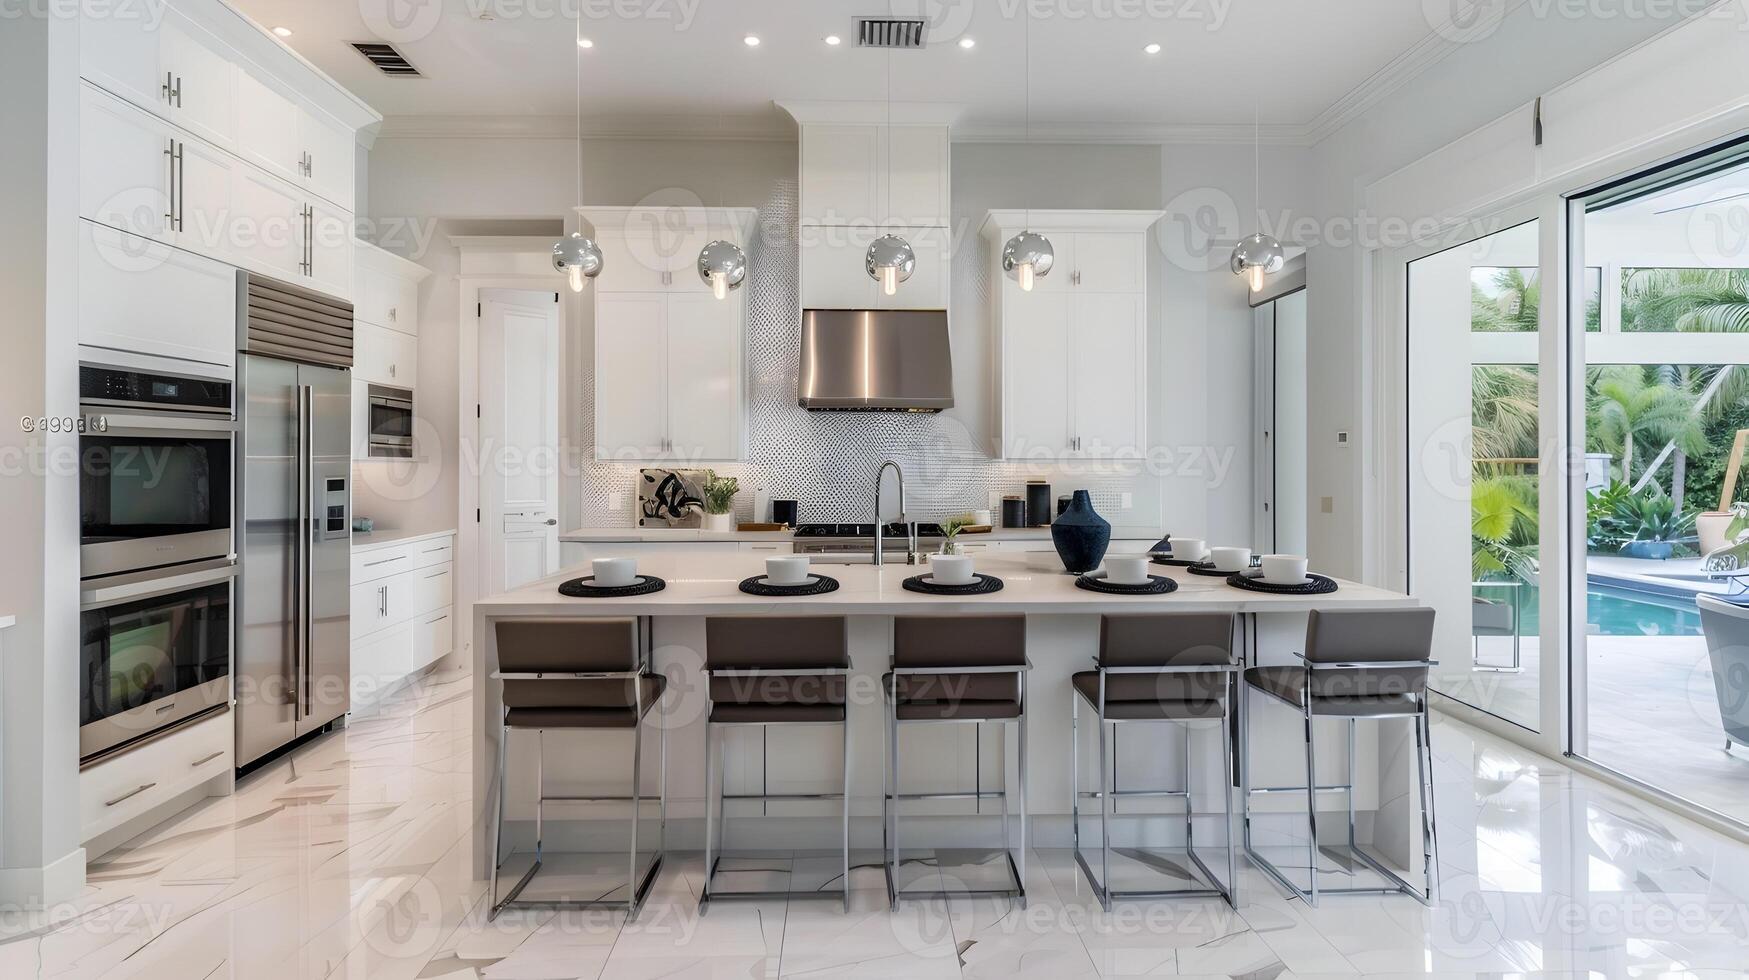 brilhante e elegante conceito aberto moderno cozinha com sofisticado eletrodomésticos e lustroso decoração foto